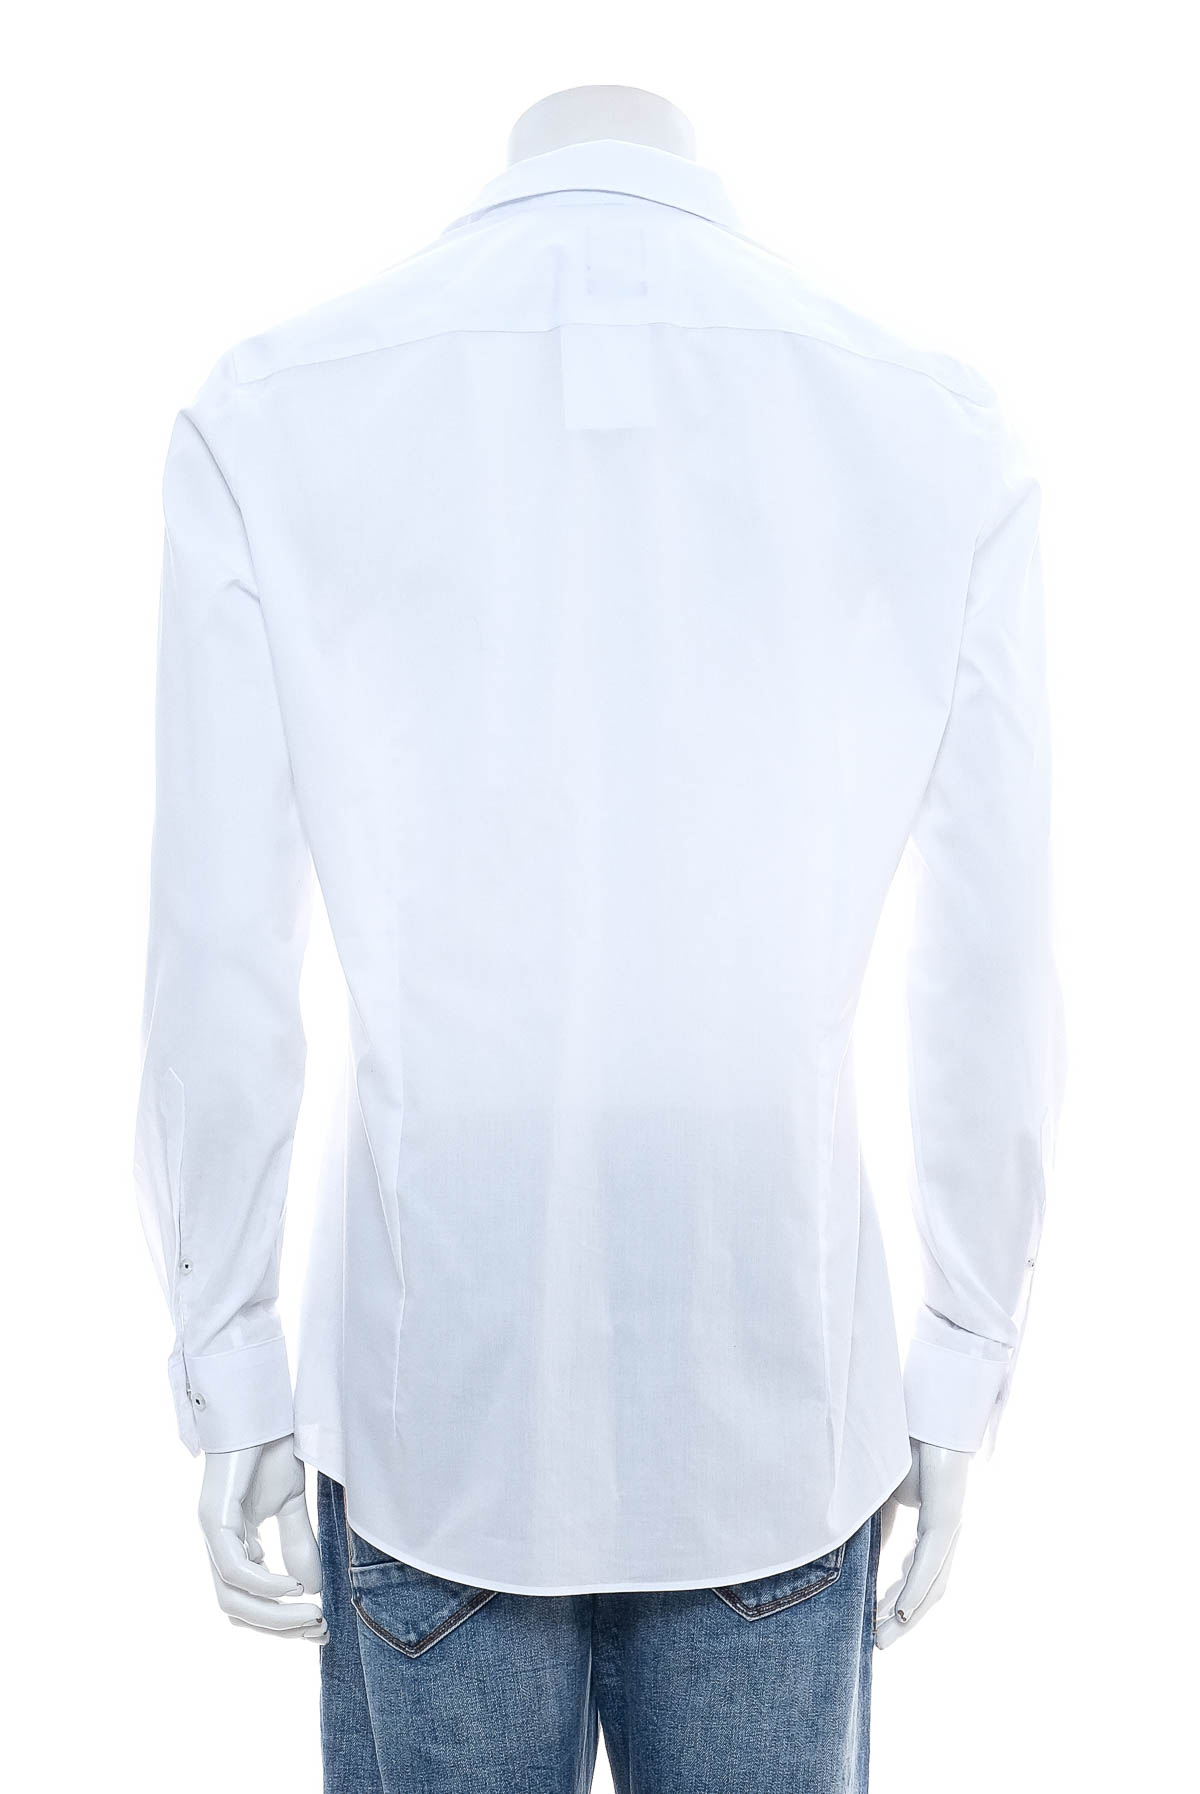 Ανδρικό πουκάμισο - Olymp - 1